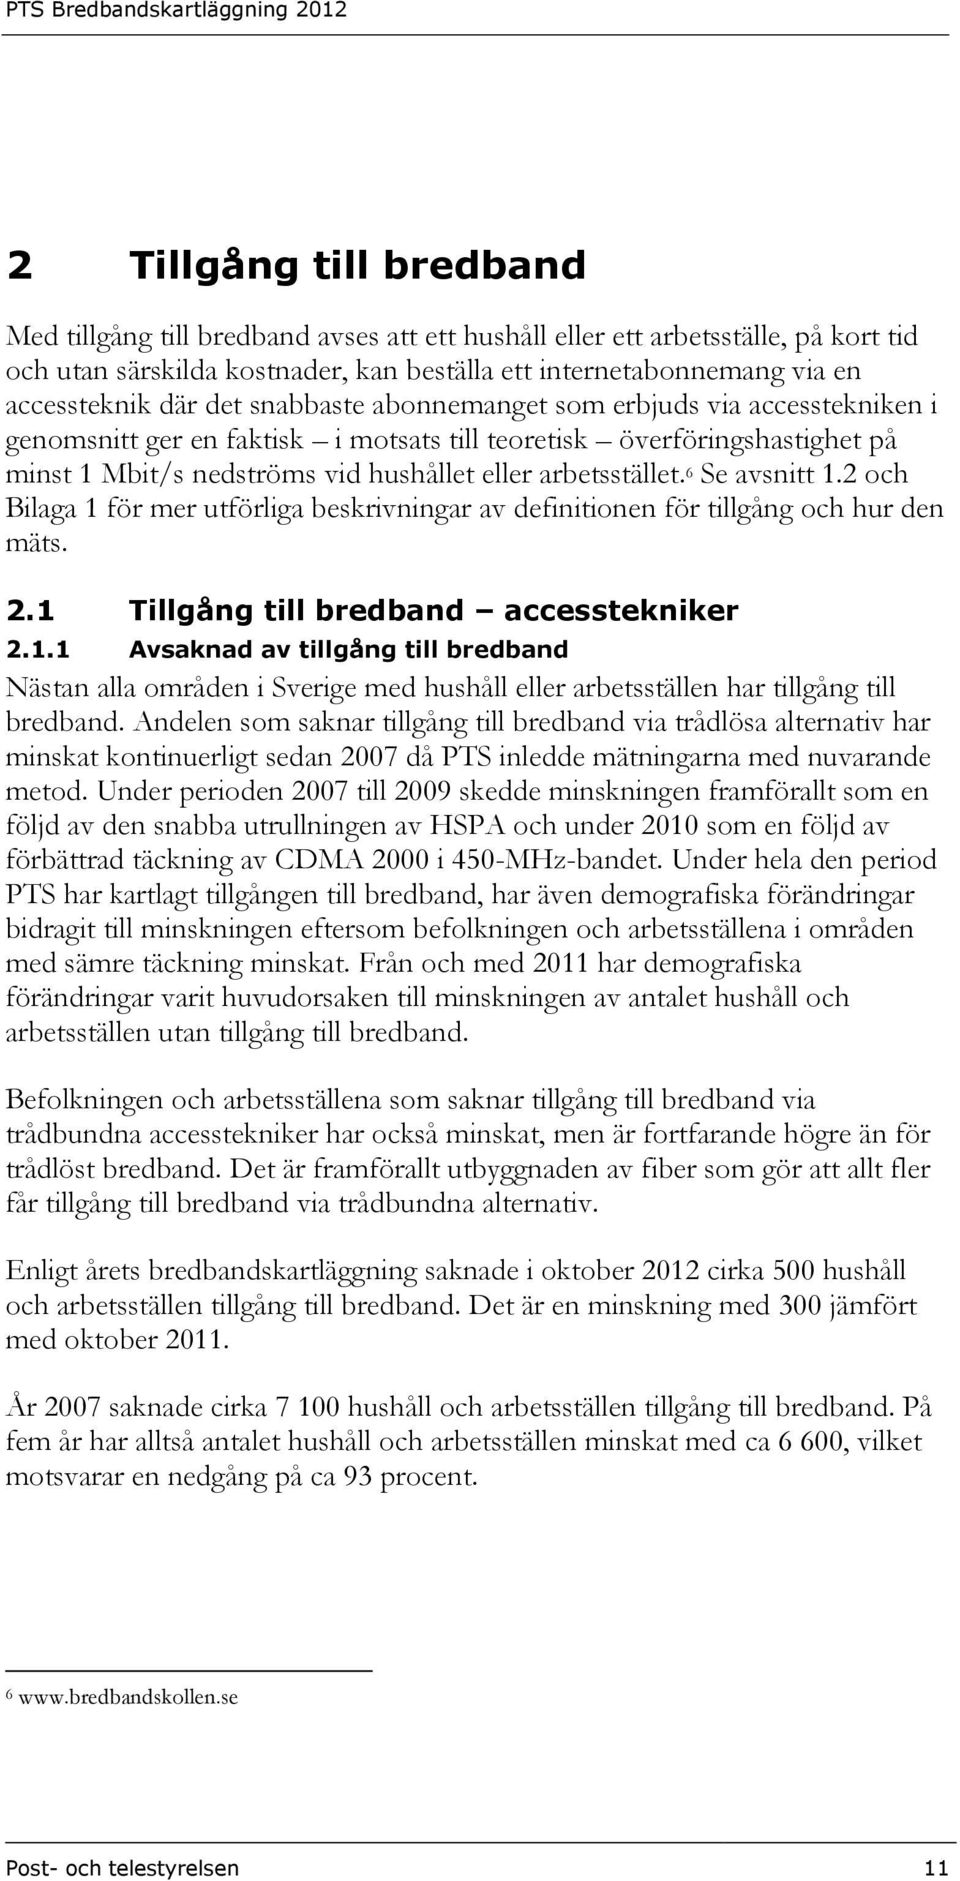 6 Se avsnitt 1.2 och Bilaga 1 för mer utförliga beskrivningar av definitionen för tillgång och hur den mäts. 2.1 Tillgång till bredband accesstekniker 2.1.1 Avsaknad av tillgång till bredband Nästan alla områden i Sverige med hushåll eller arbetsställen har tillgång till bredband.